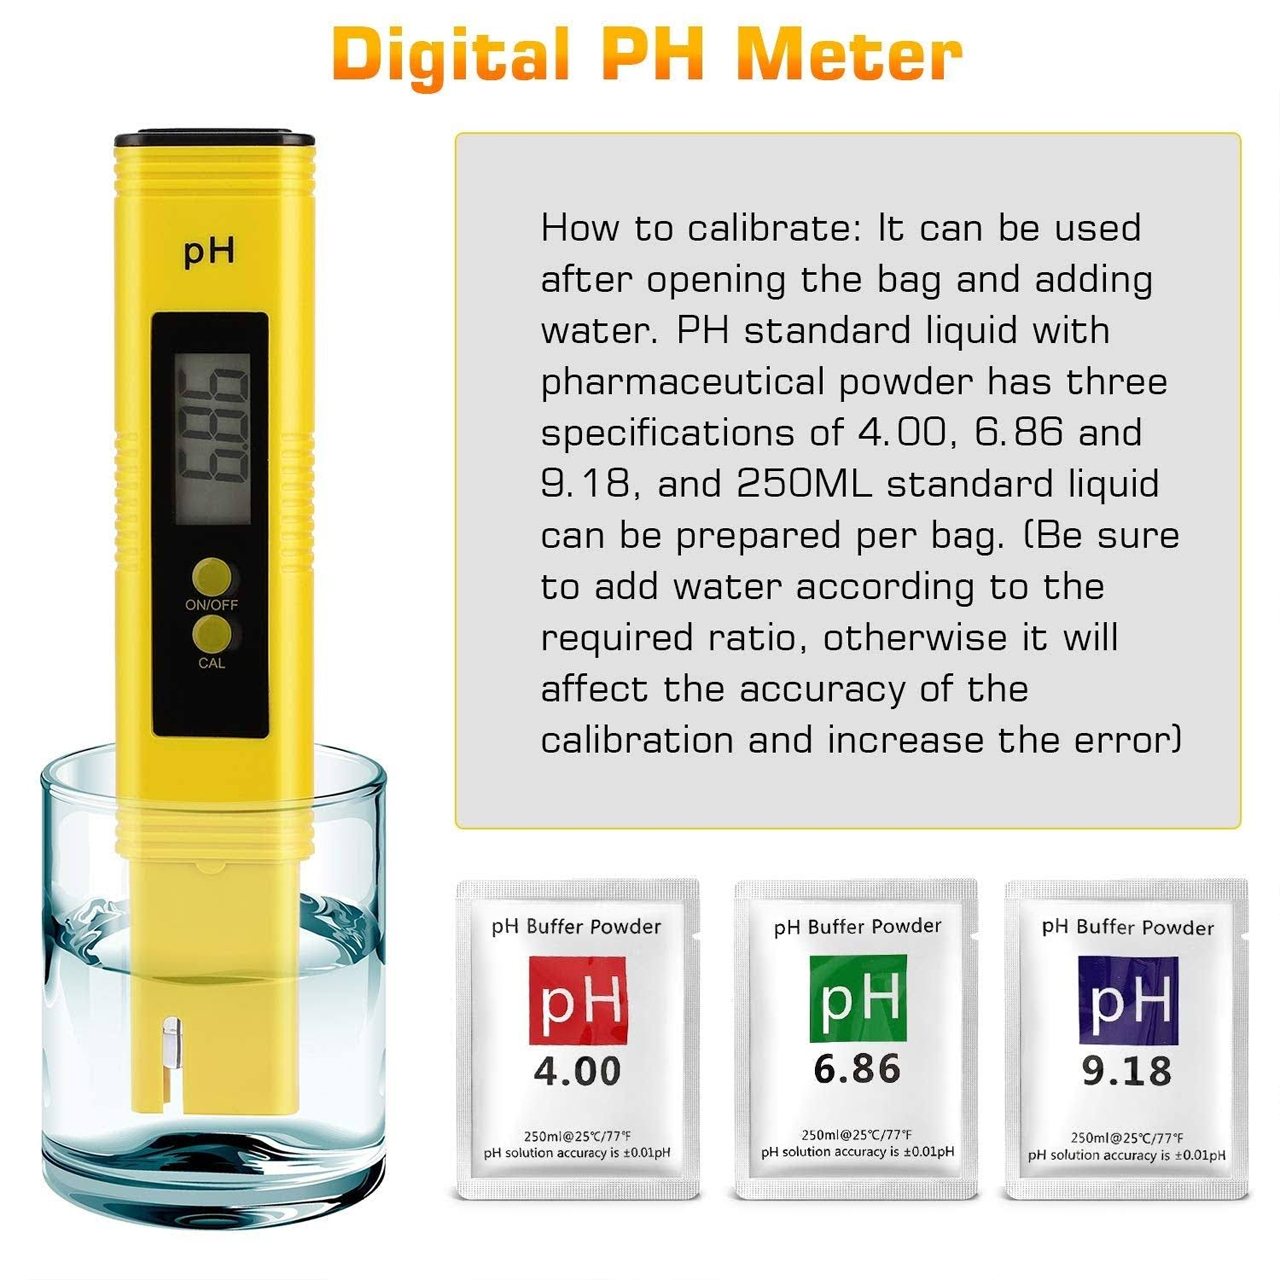 Combo bút đo độ PH và bút thử nước TDS-3 kèm bao da